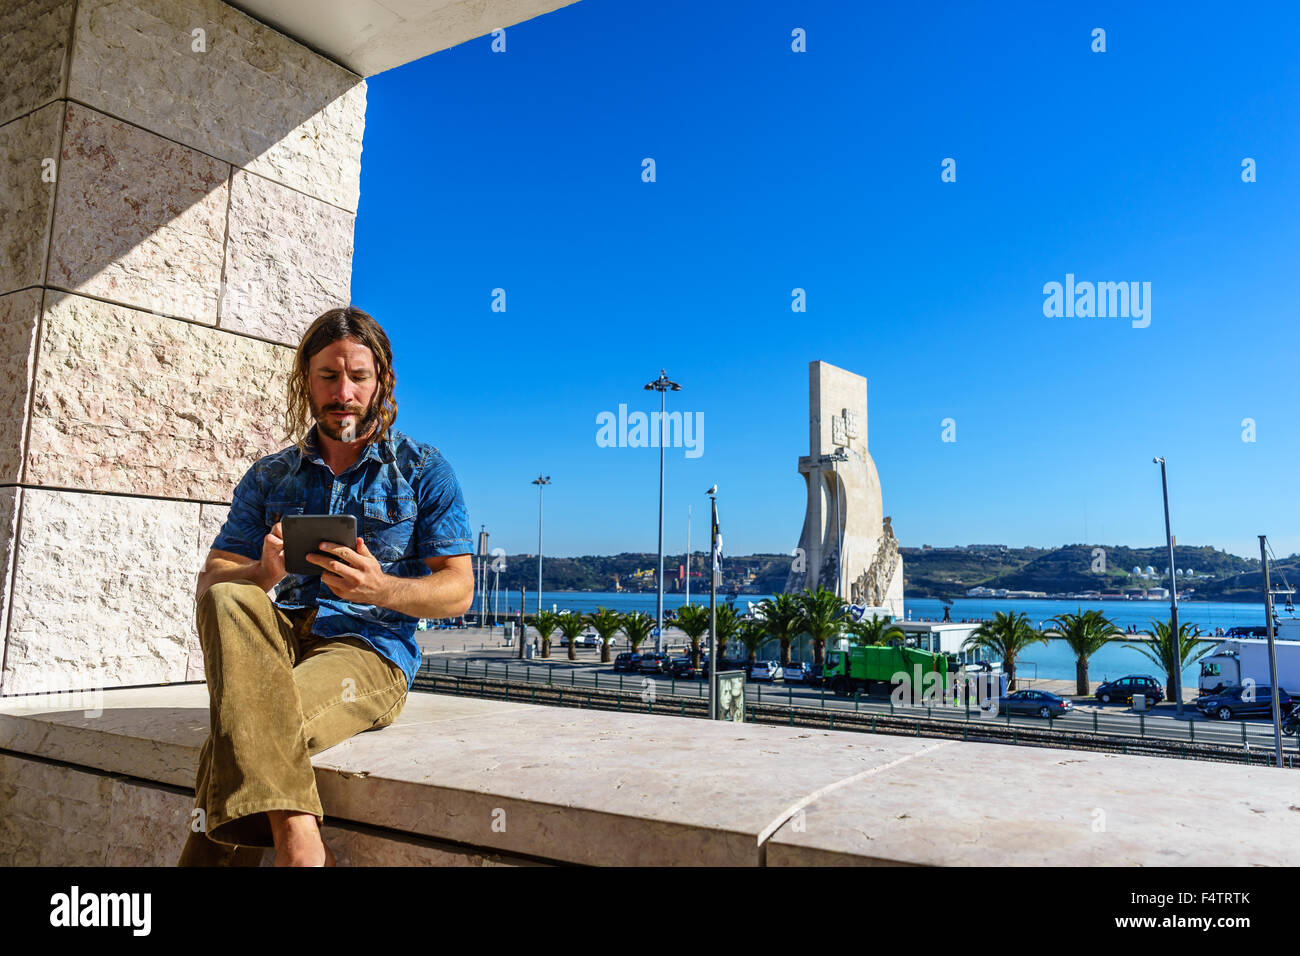 El hombre se lee desde una tableta electrónica delante del icono de Portuguesa, el Monumento a los descubrimientos Padrao dos Descobrimentos. Foto de stock